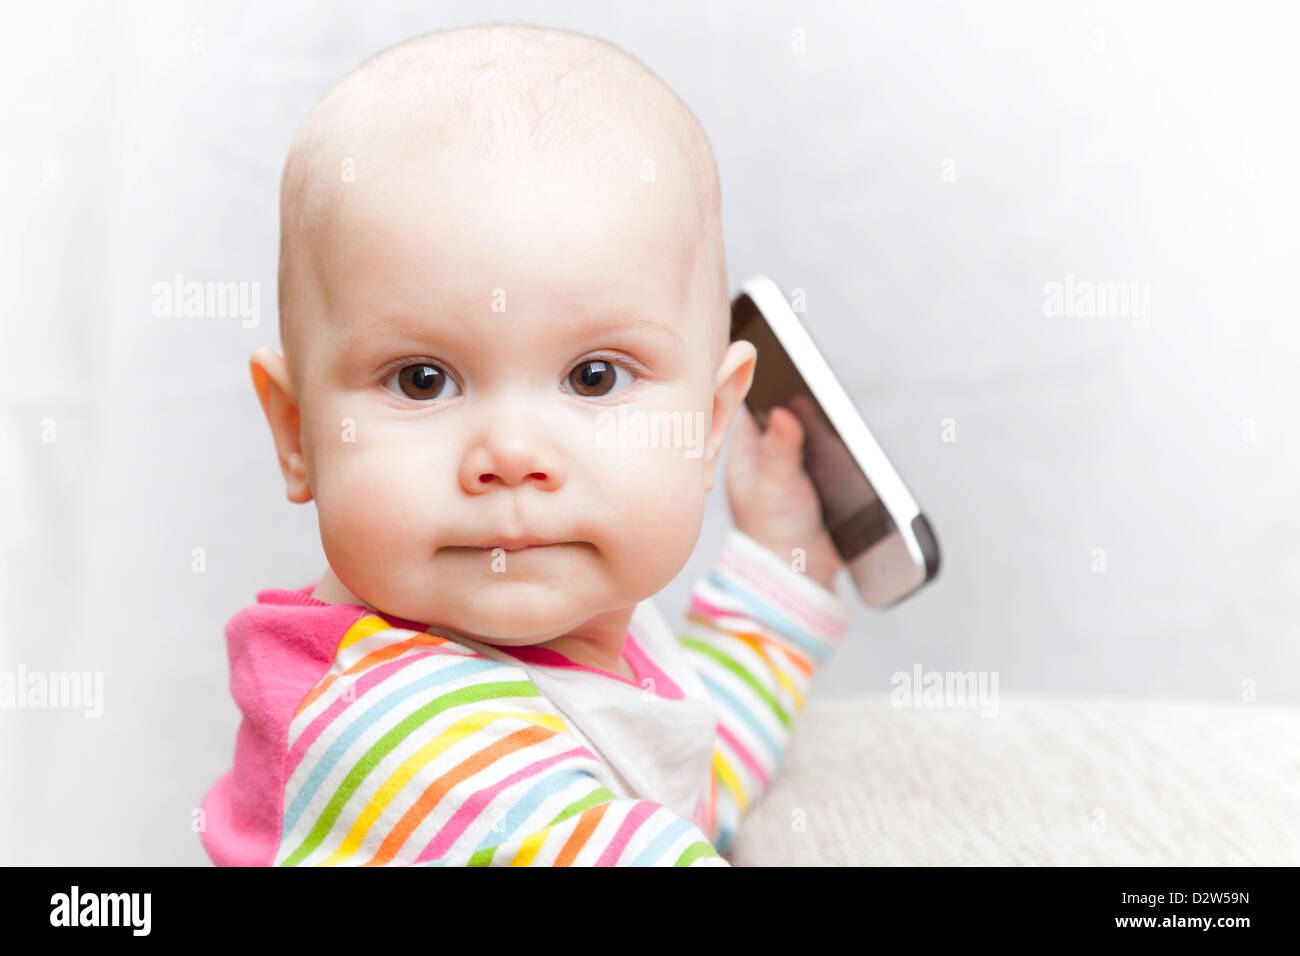 Petit bébé dans des vêtements à rayures occasionnels joue avec un téléphone mobile Banque D'Images